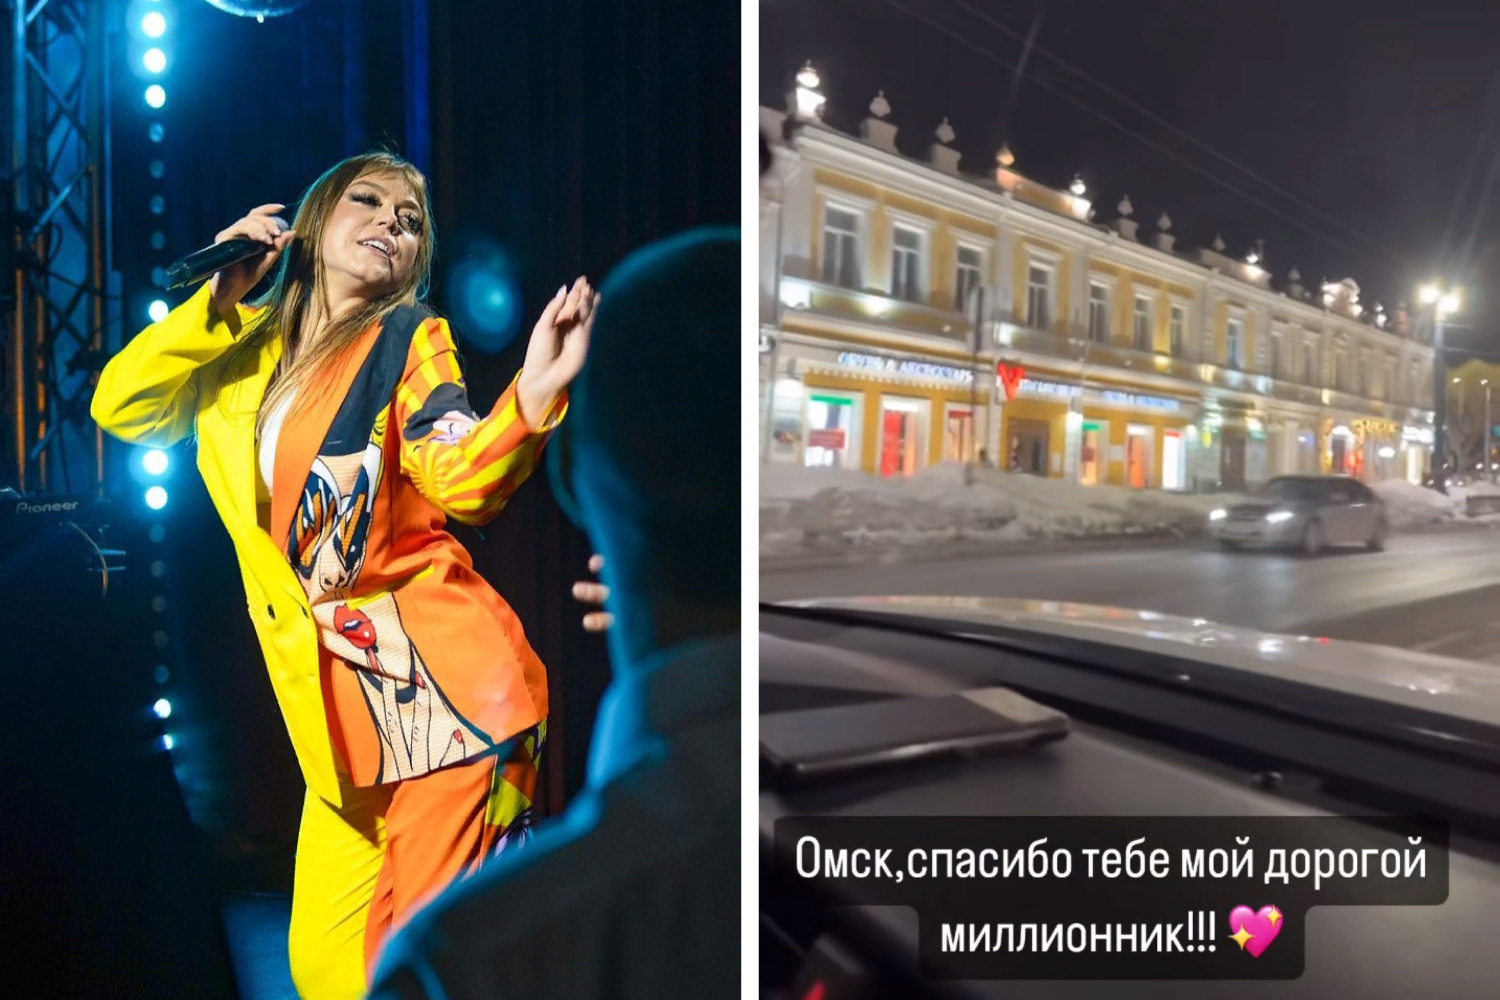 «Ну очень красивый город»: певица Акула расхвалила Омск за здания и виды